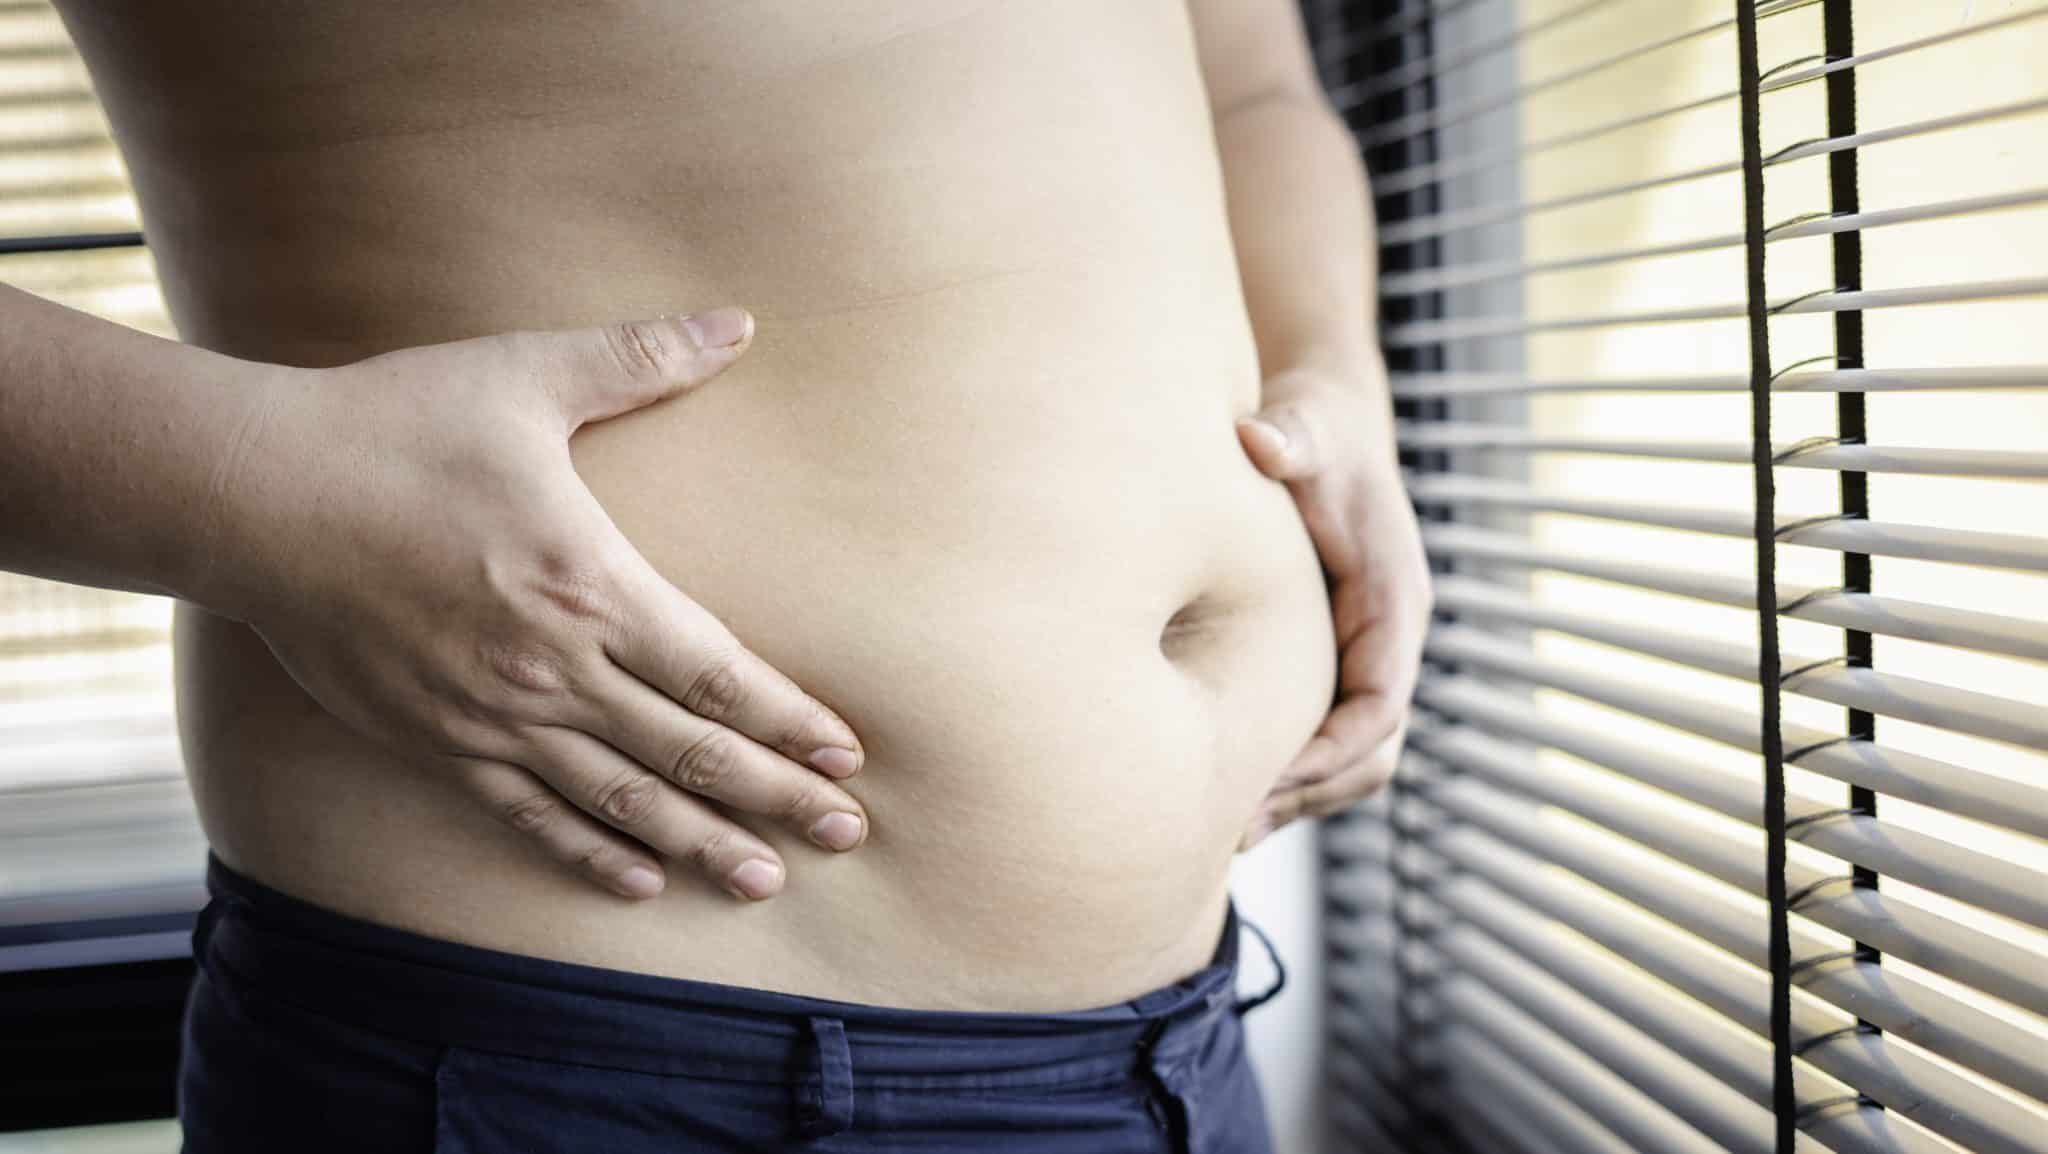 Perdre du ventre : conseils pour une silhouette saine et équilibrée